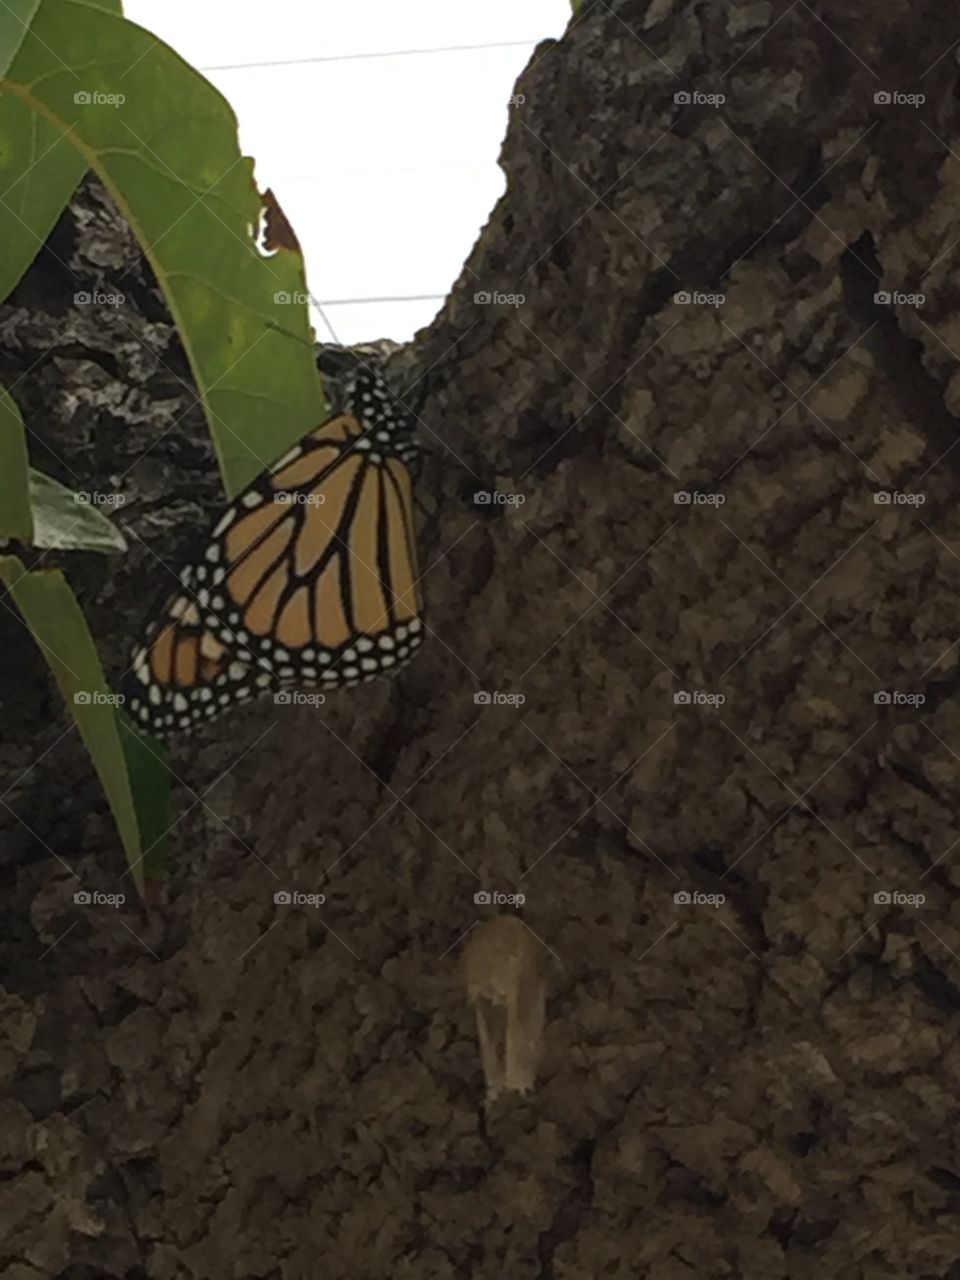 Monarch butterfly 